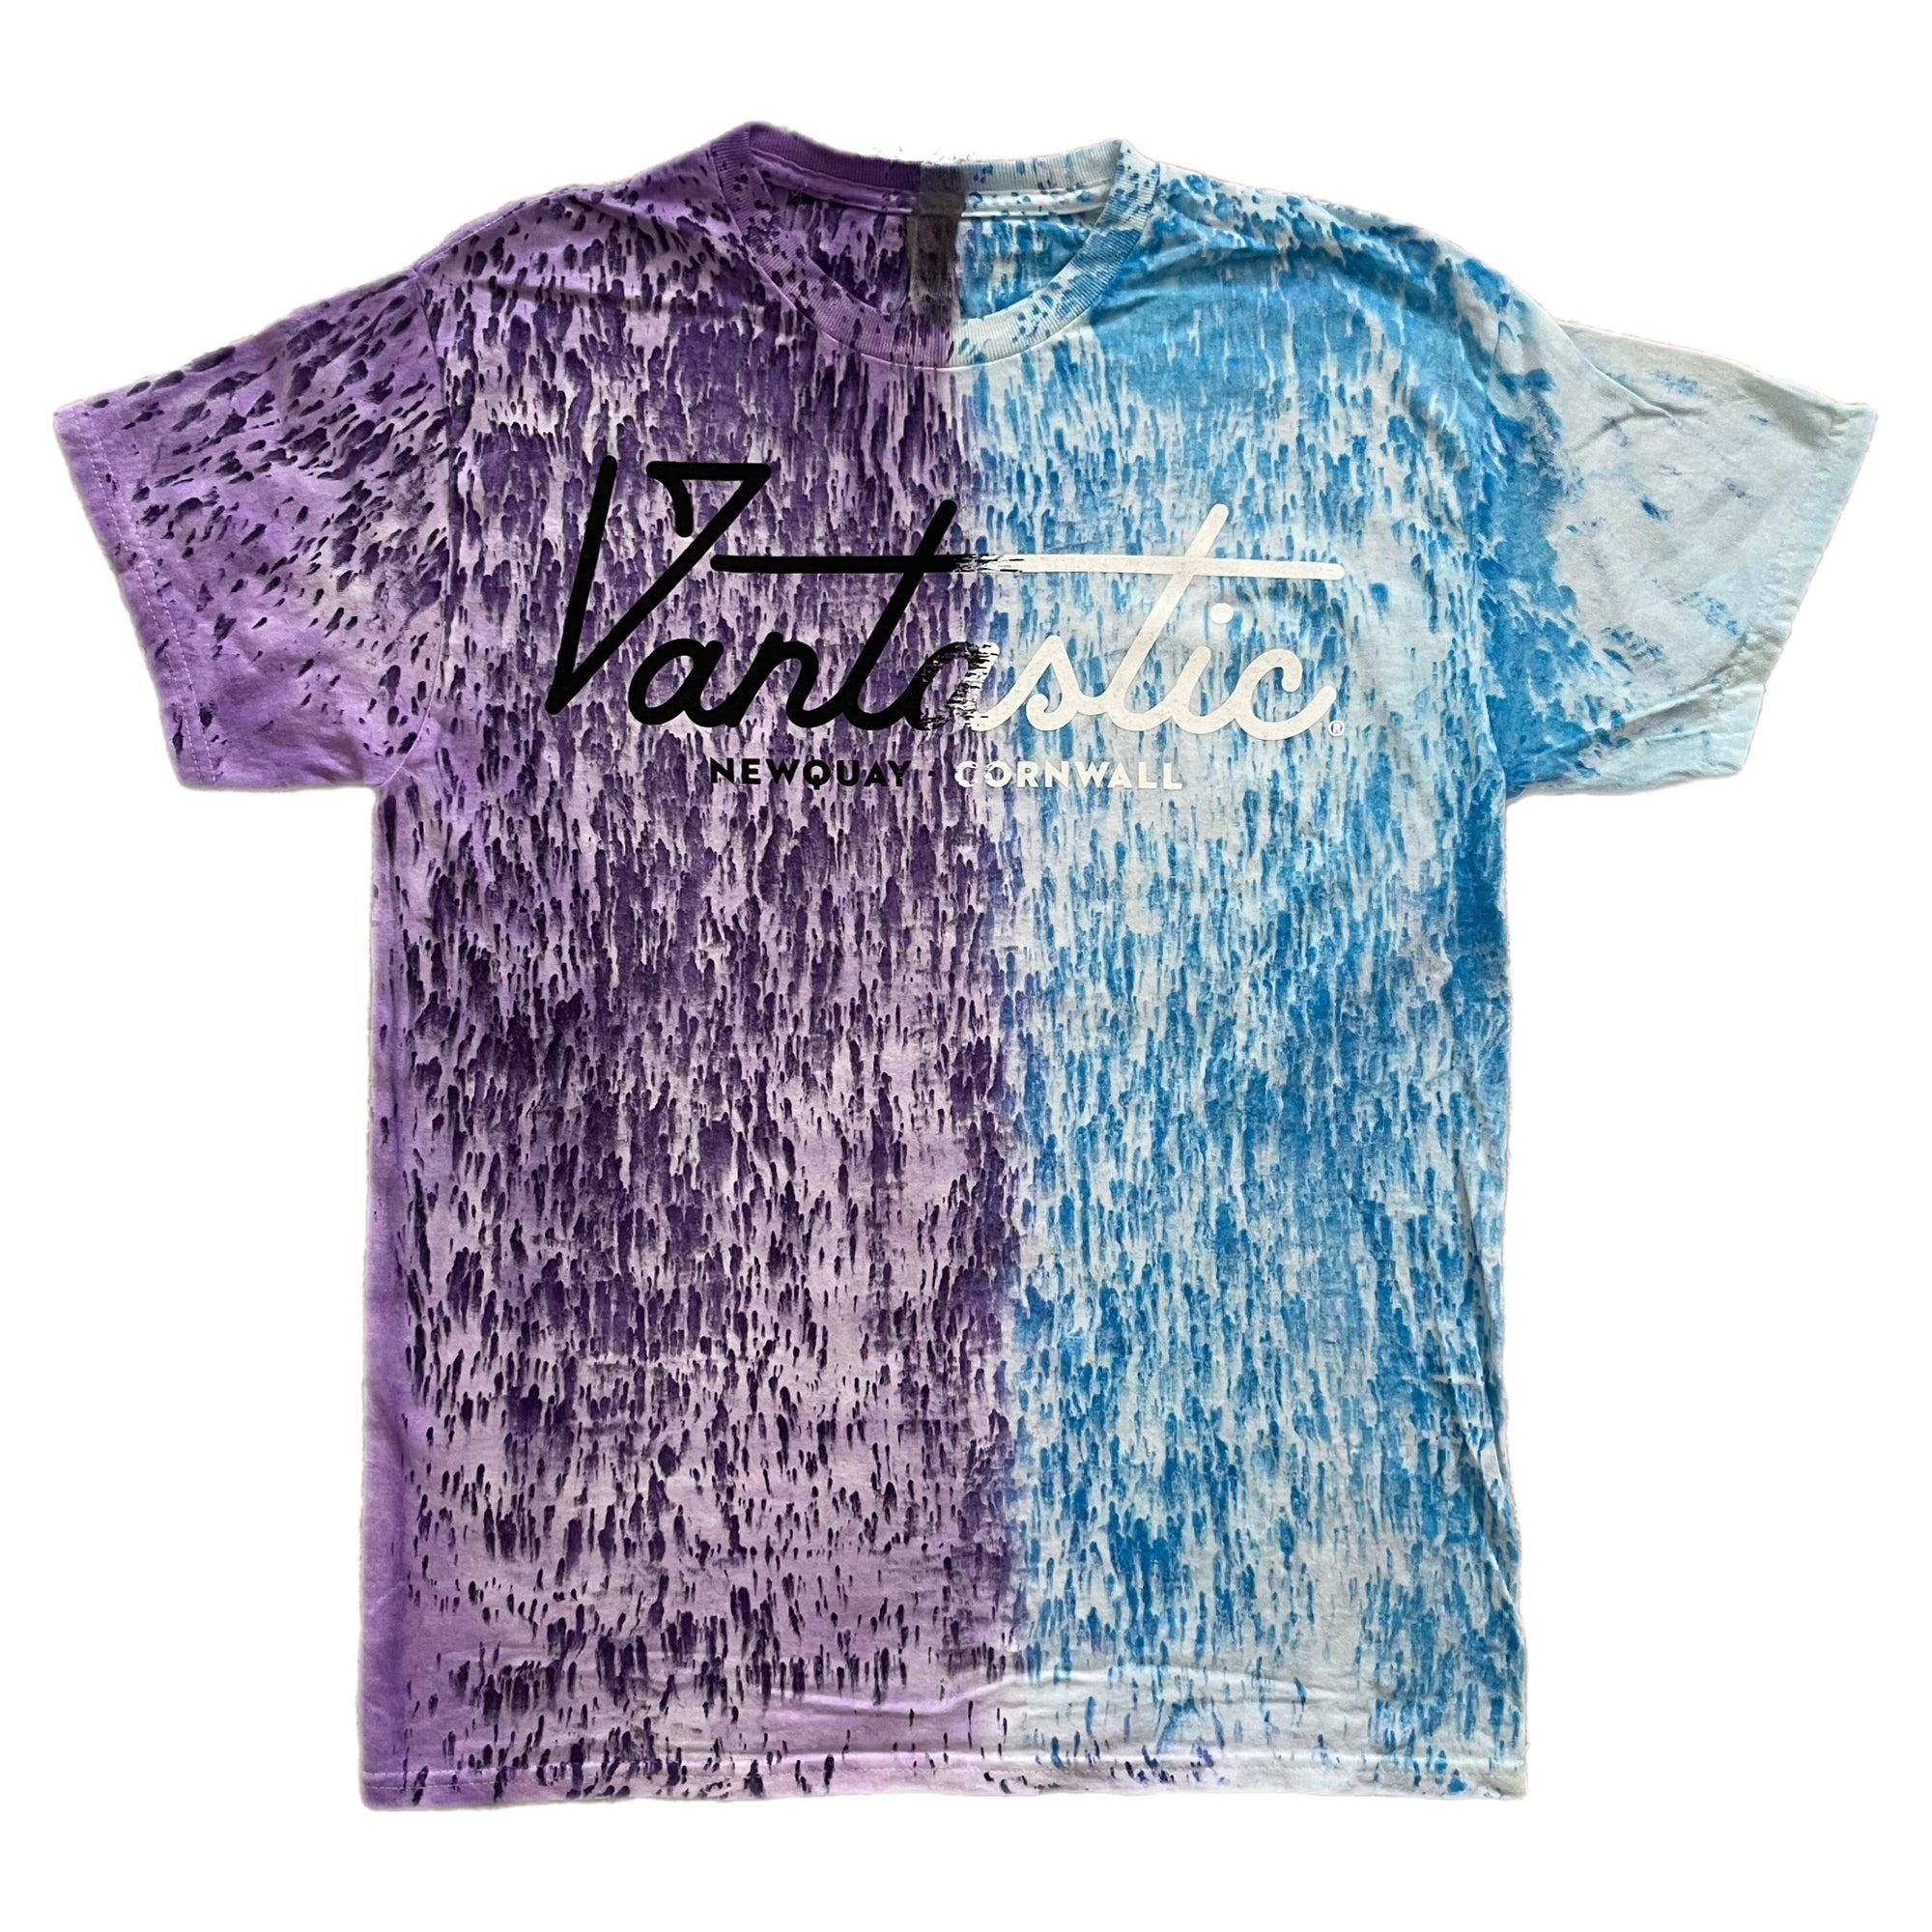 Tie-dye t-shirt - purple blue